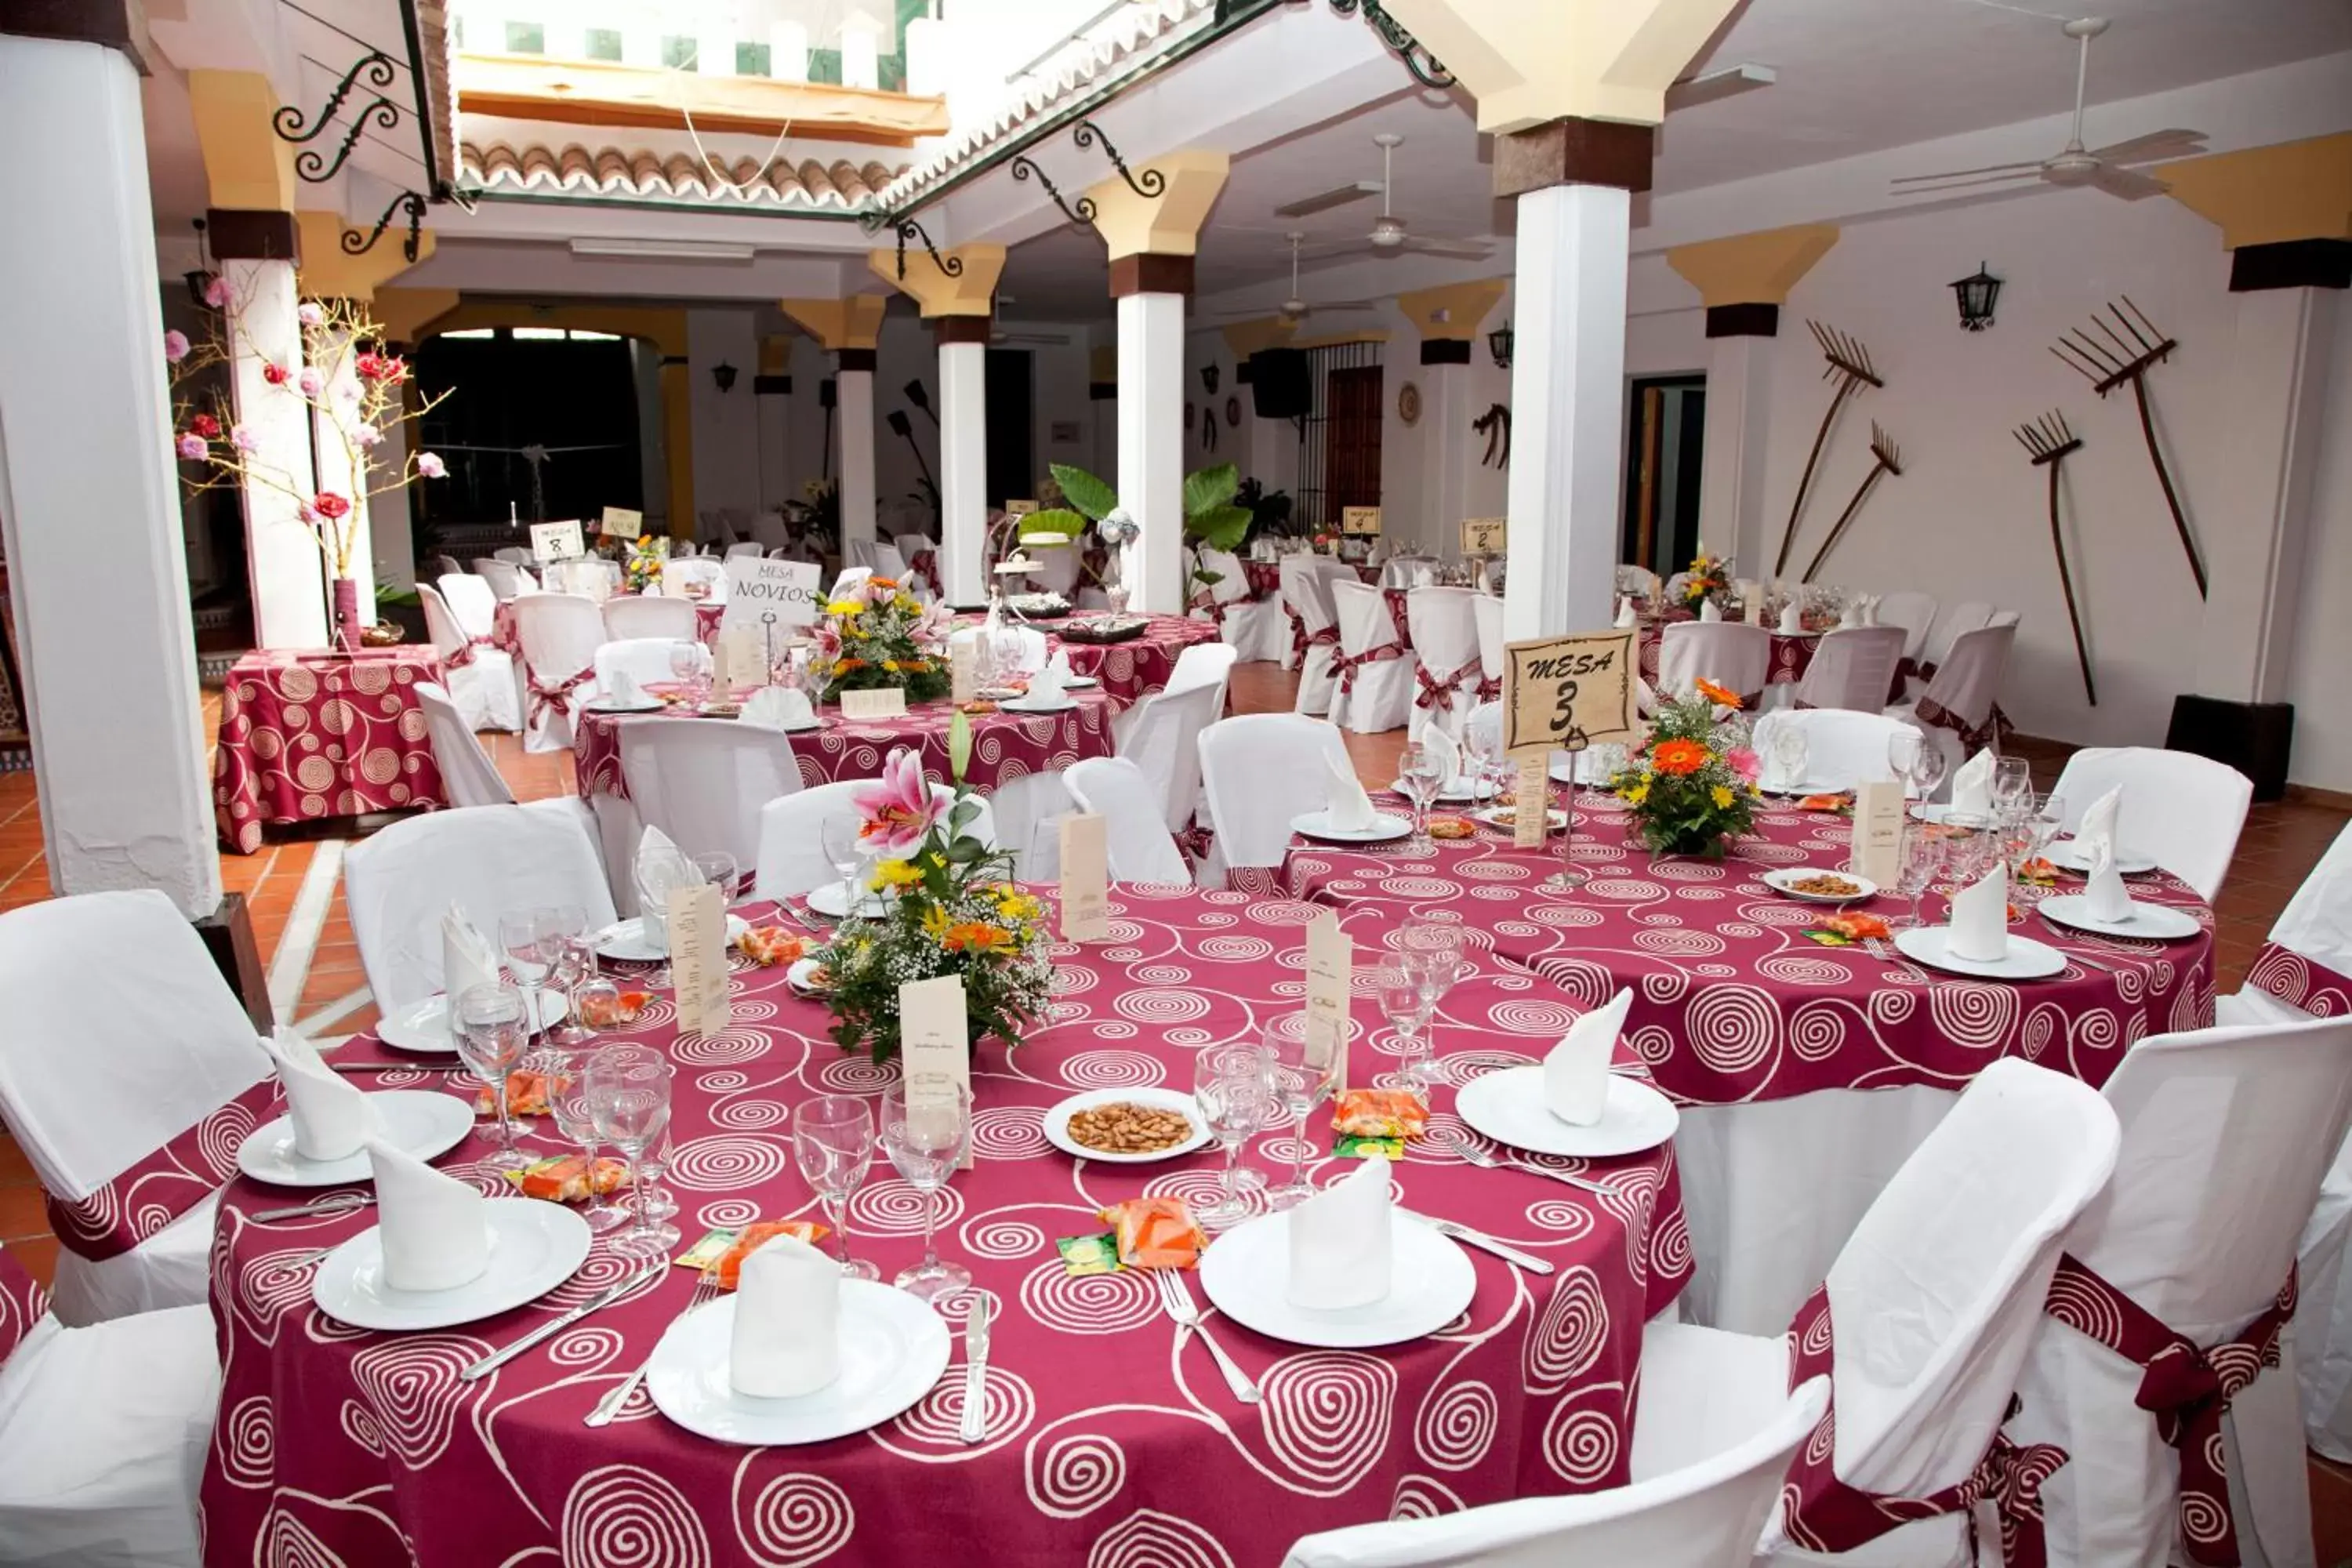 Banquet/Function facilities, Banquet Facilities in Hostal El Cortijo